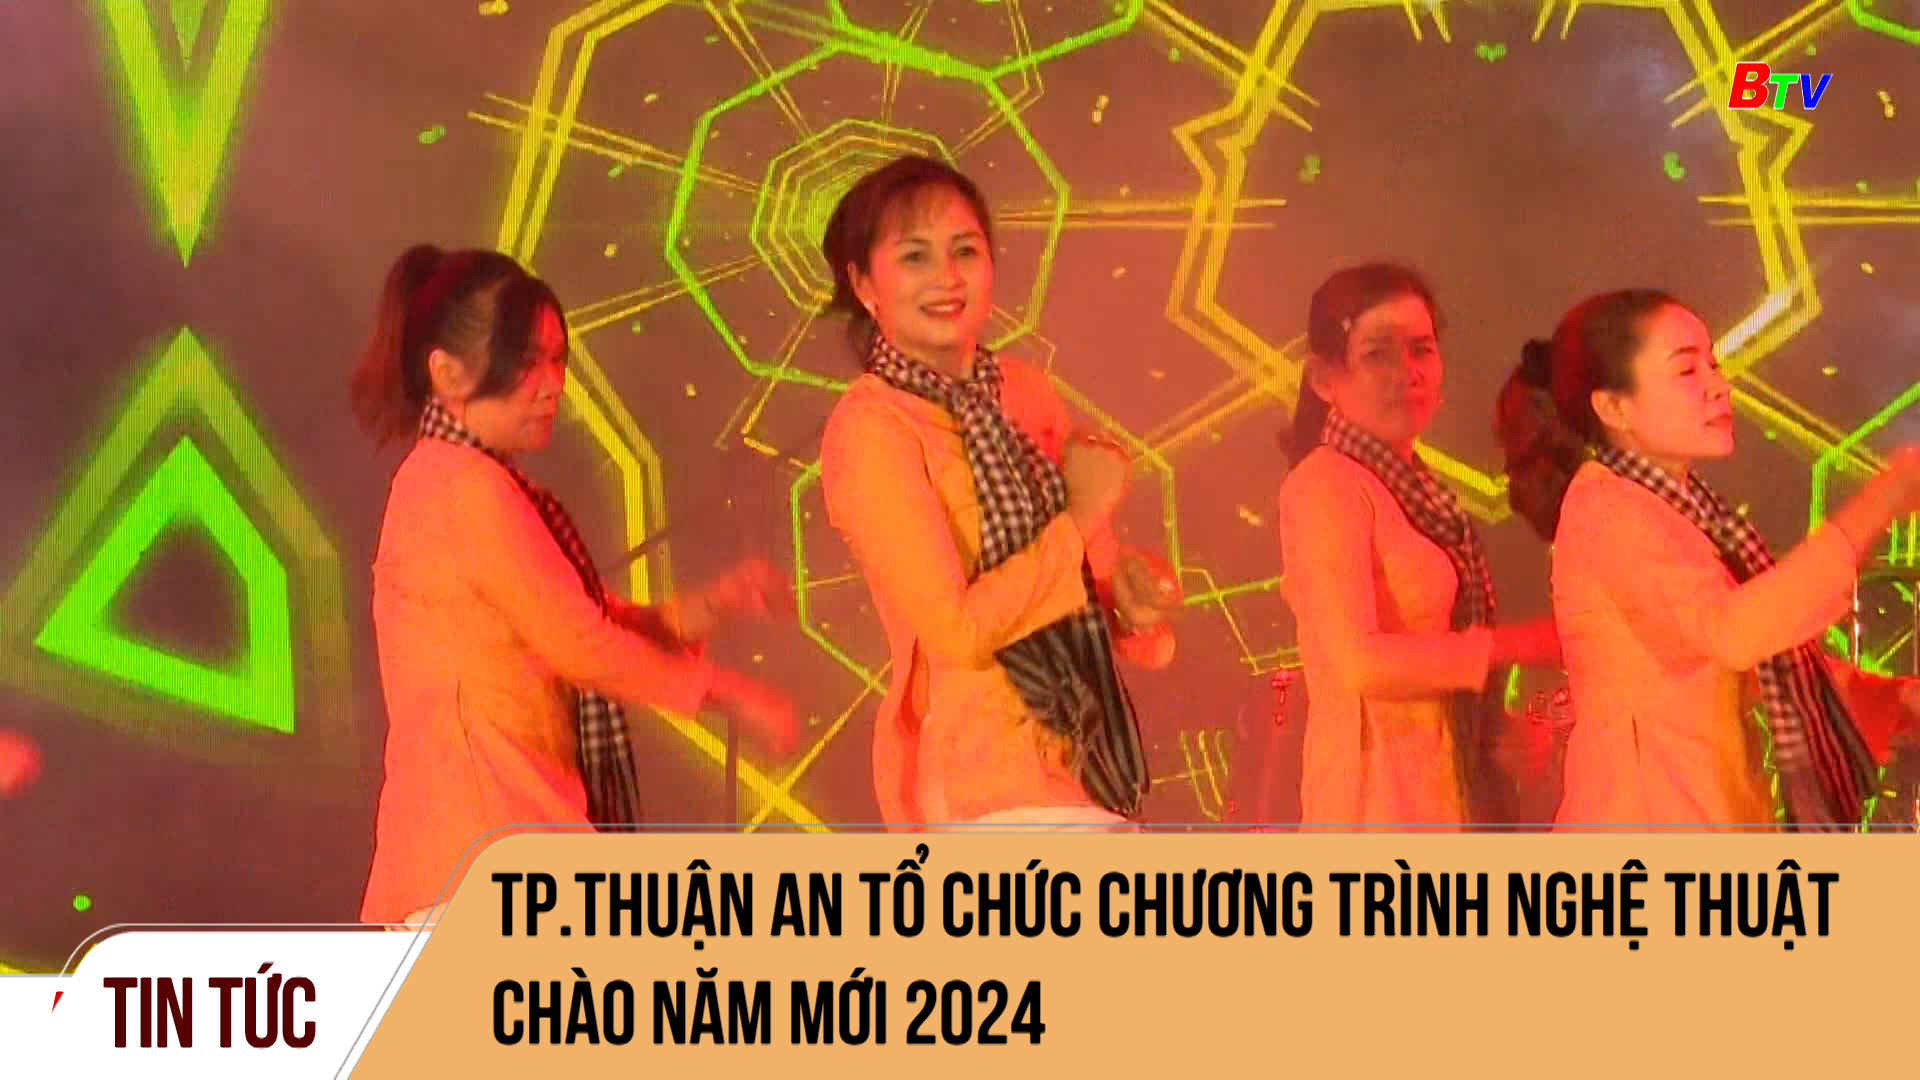 Tp.Thuận An: Chương trình nghệ thuật chào năm mới 2024